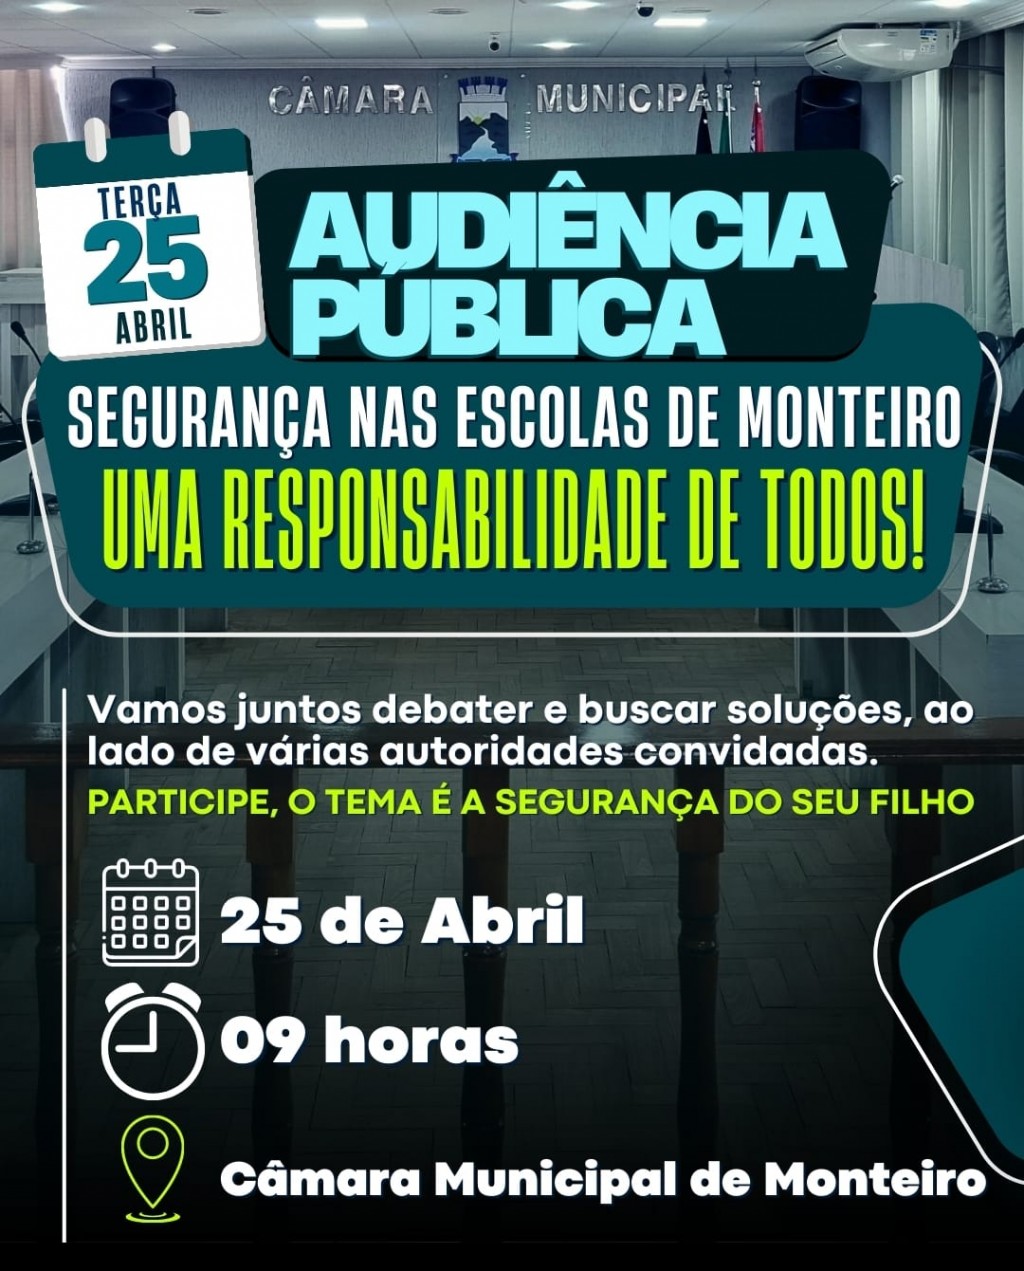 Câmara Municipal promove audiência pública na próxima terça para discutir a segurança nas escolas de Monteiro.